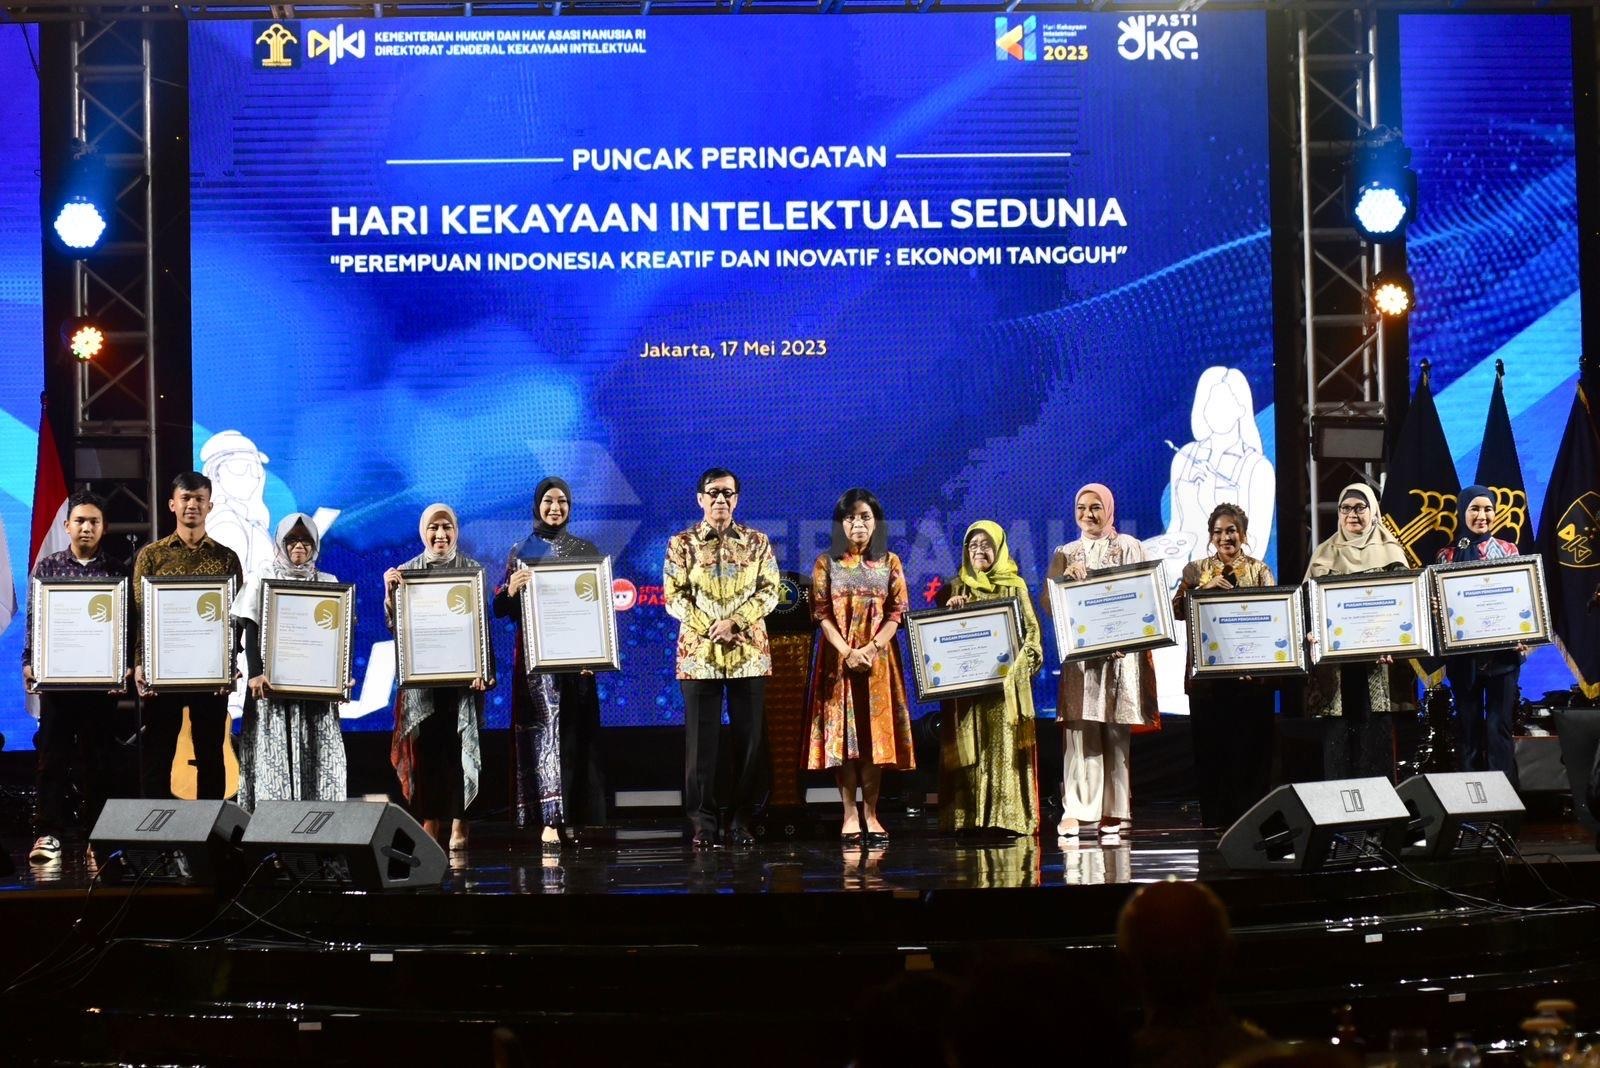  KEREN! Bos Pertamina Dinobatkan sebagai Perempuan Indonesia Pendorong Inovasi